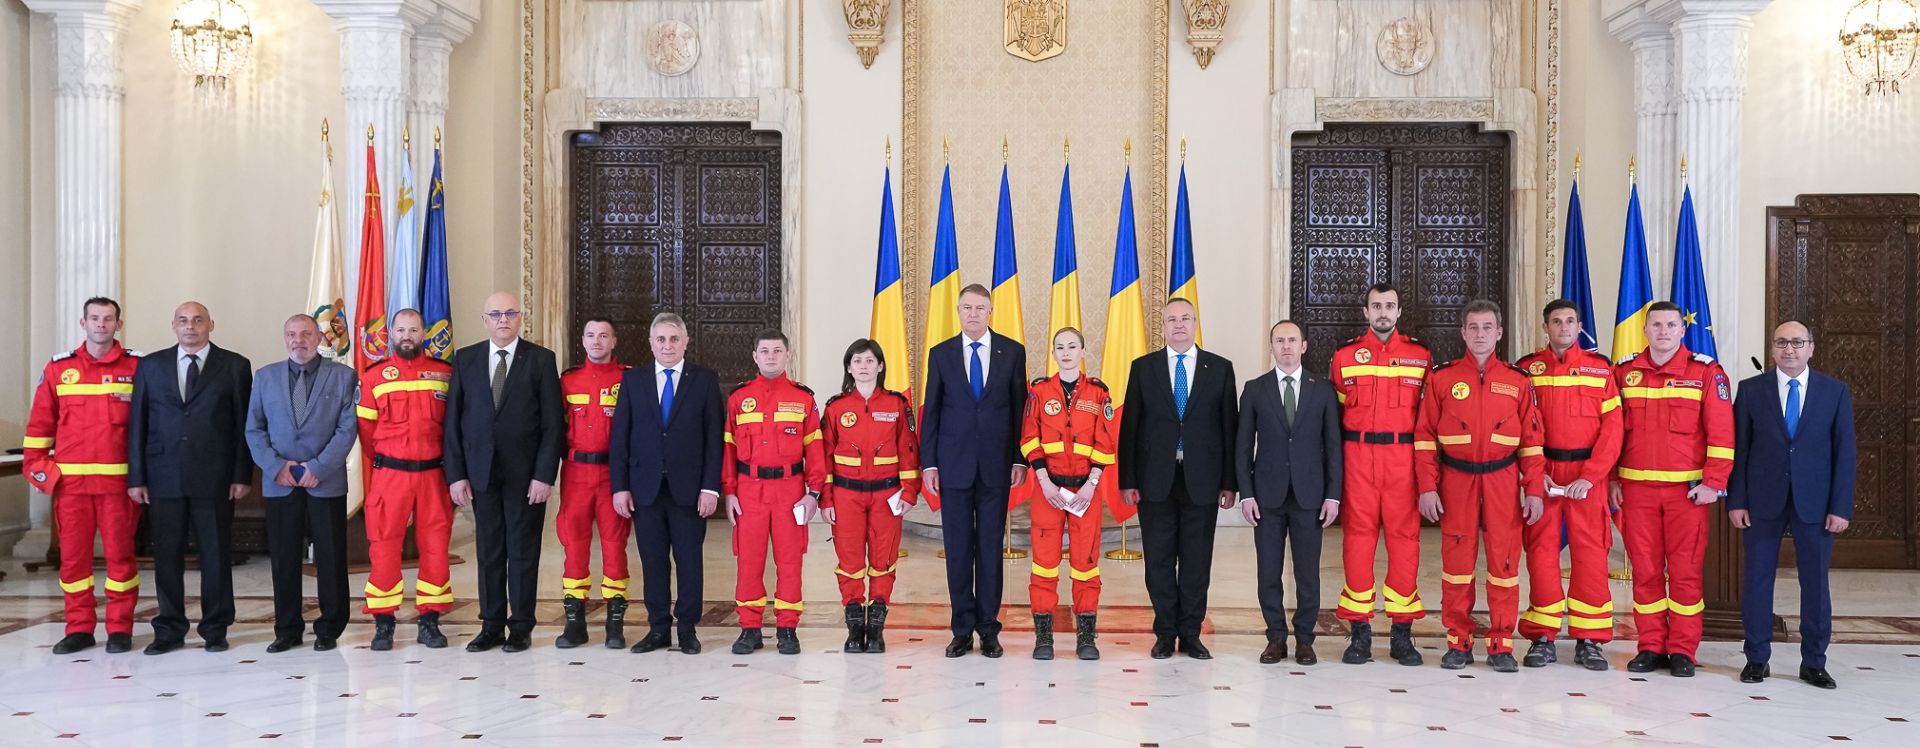 Voluntarii care au fost în misiune în Turcia, decorați de președintele României